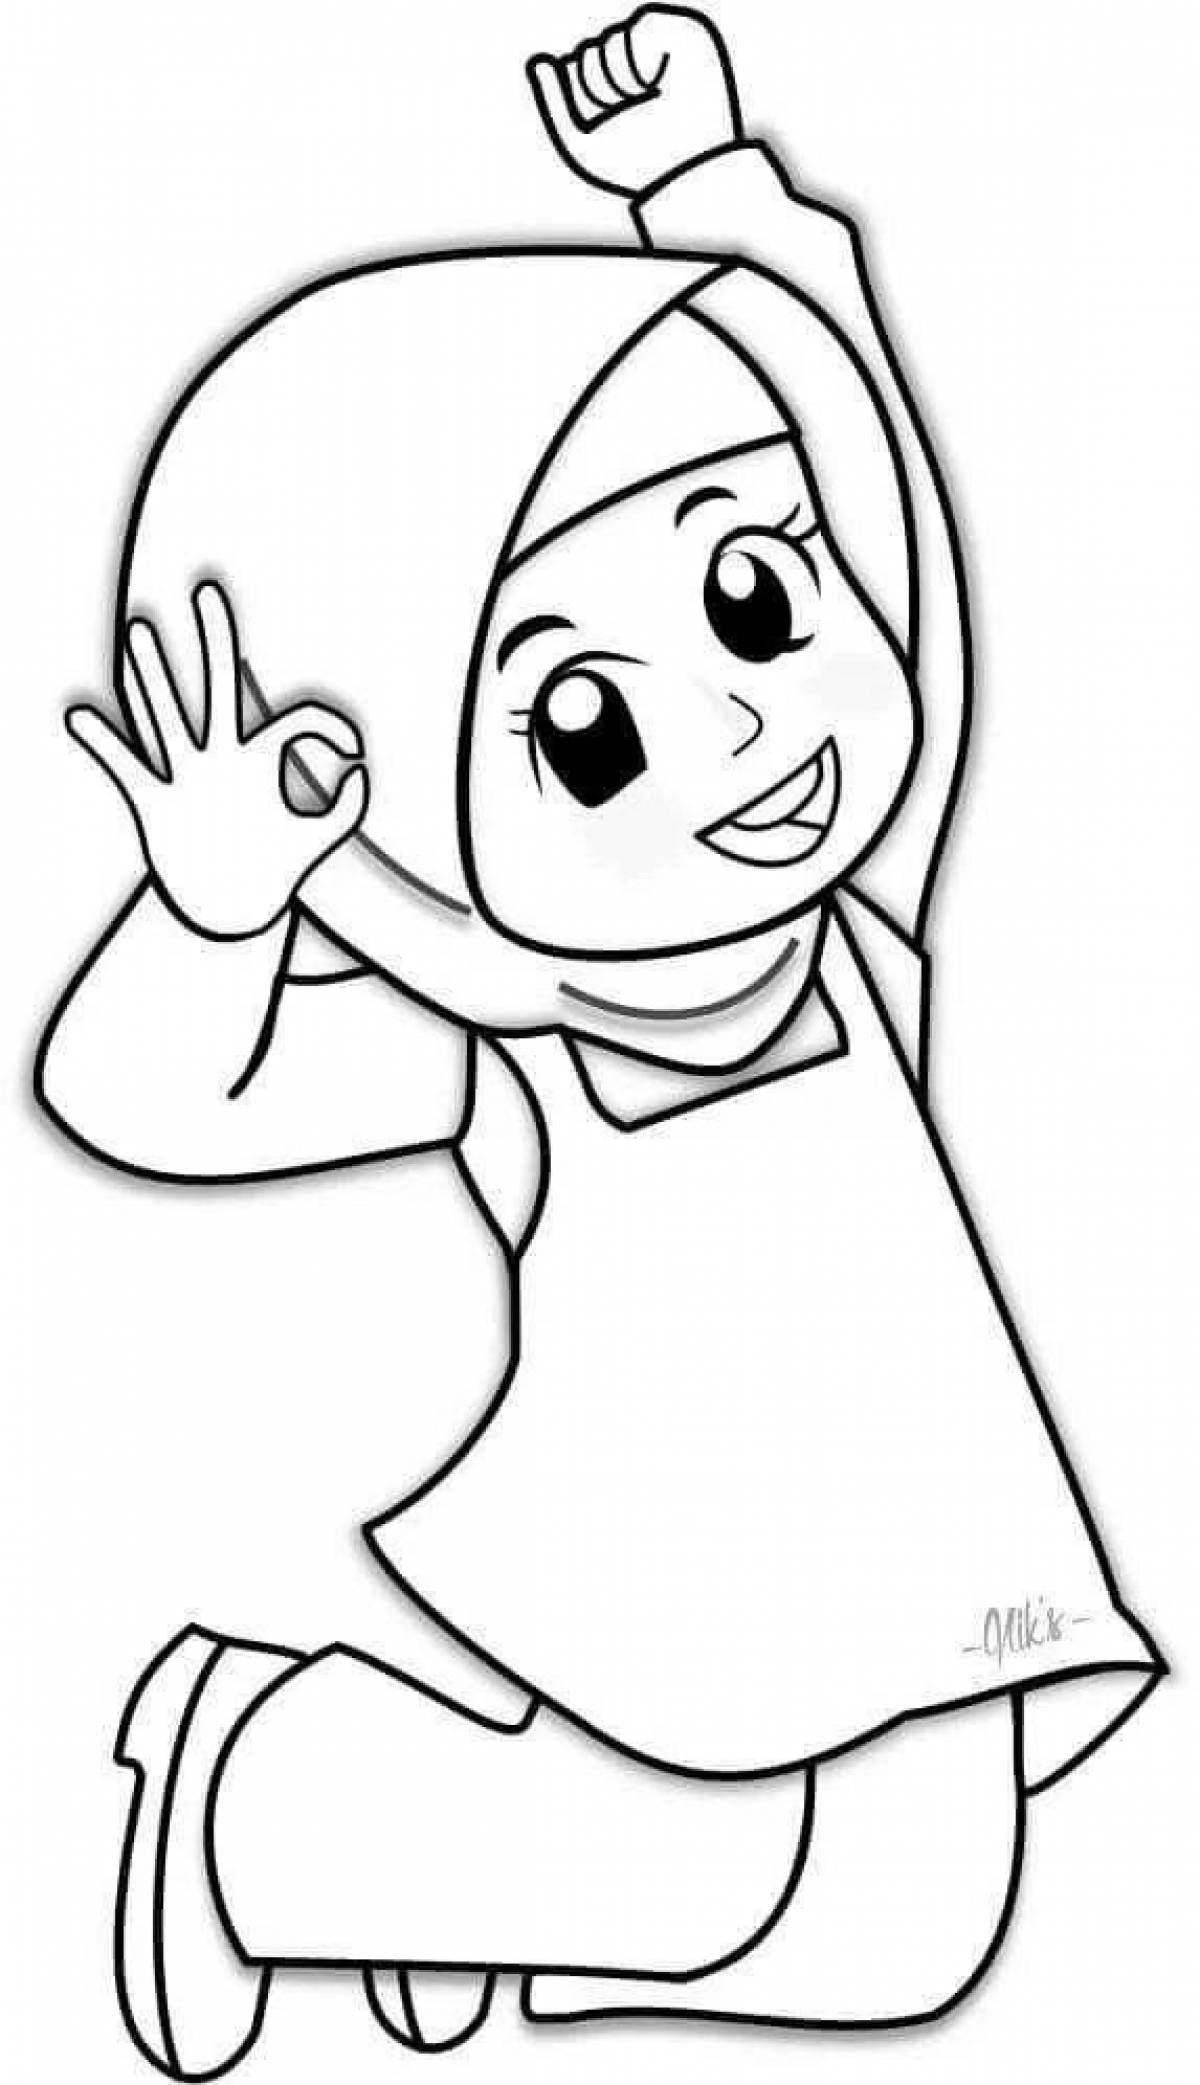 Playful muslim coloring book